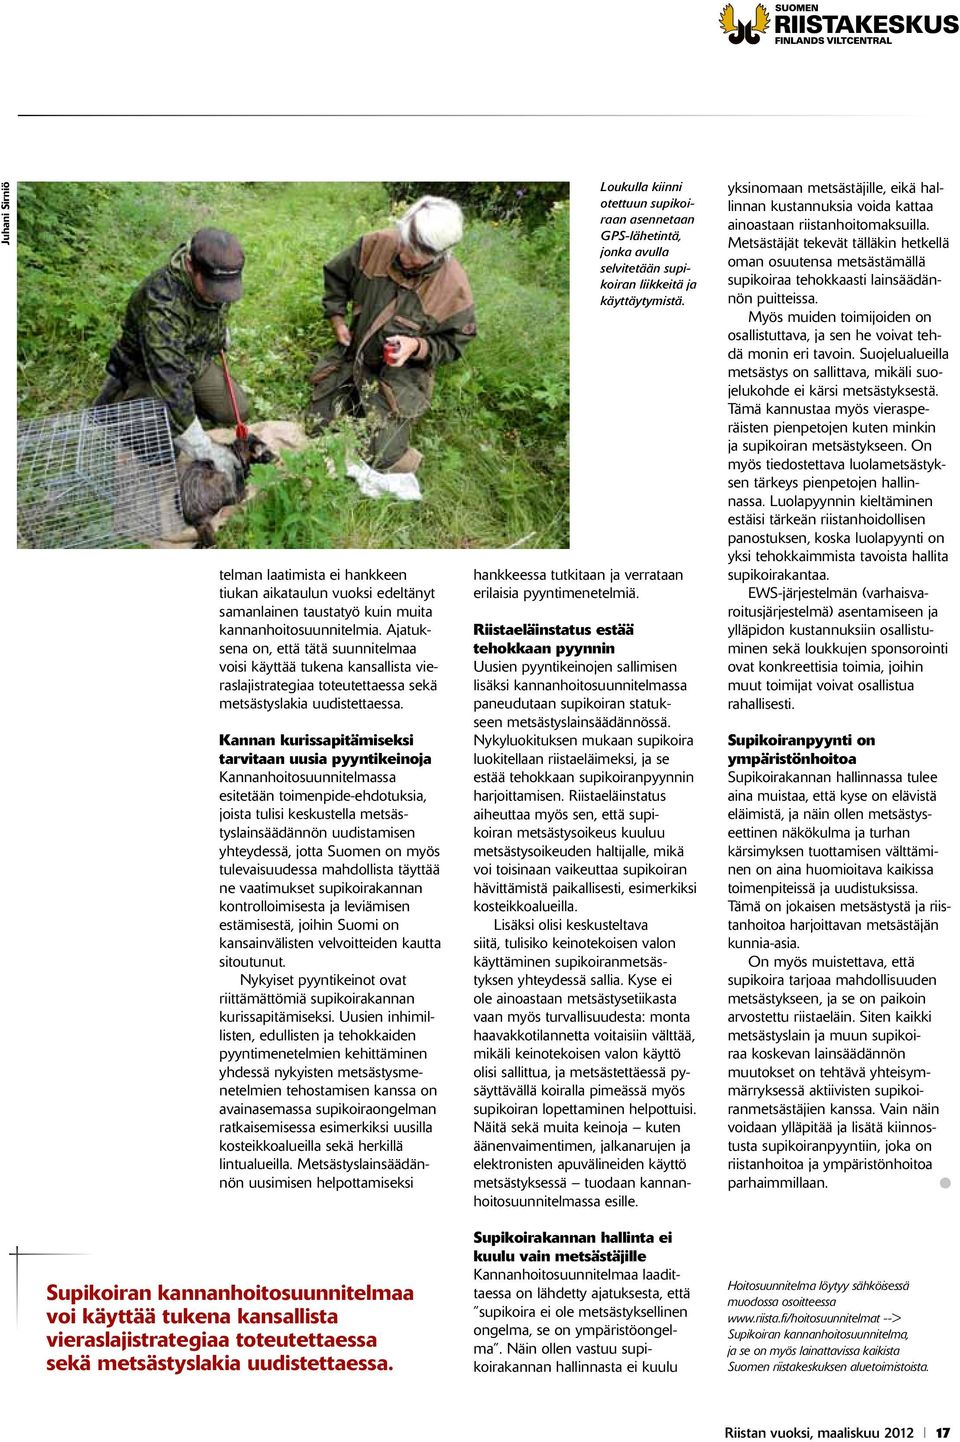 Kannan kurissapitämiseksi tarvitaan uusia pyyntikeinoja Kannanhoitosuunnitelmassa esitetään toimenpide-ehdotuksia, joista tulisi keskustella metsästyslainsäädännön uudistamisen yhteydessä, jotta